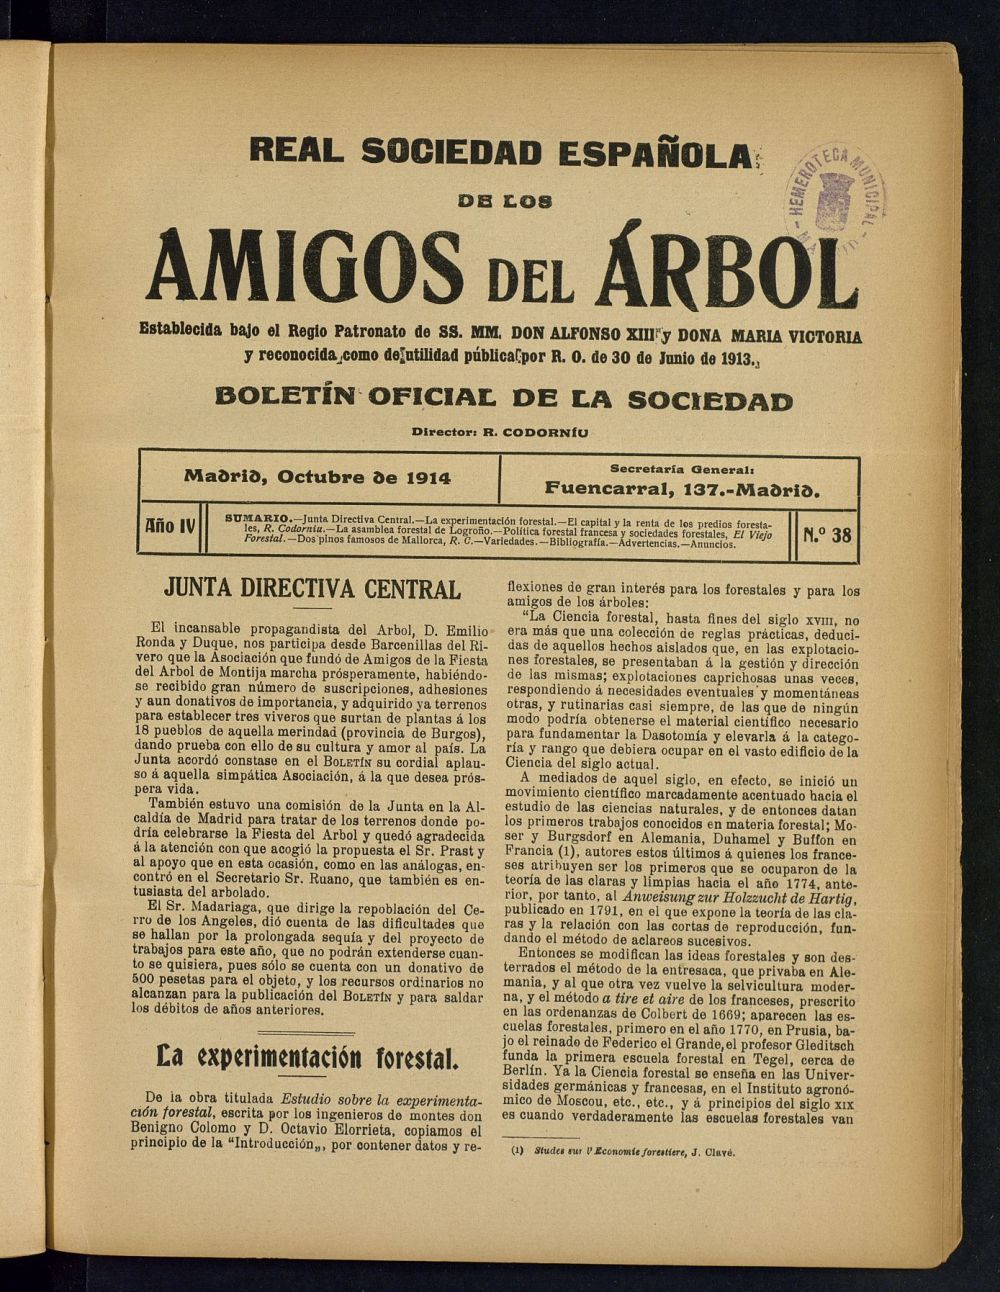 Boletn Comisin organizadora de la Sociedad Espaola de los amigos del rbol de octubre de 1914